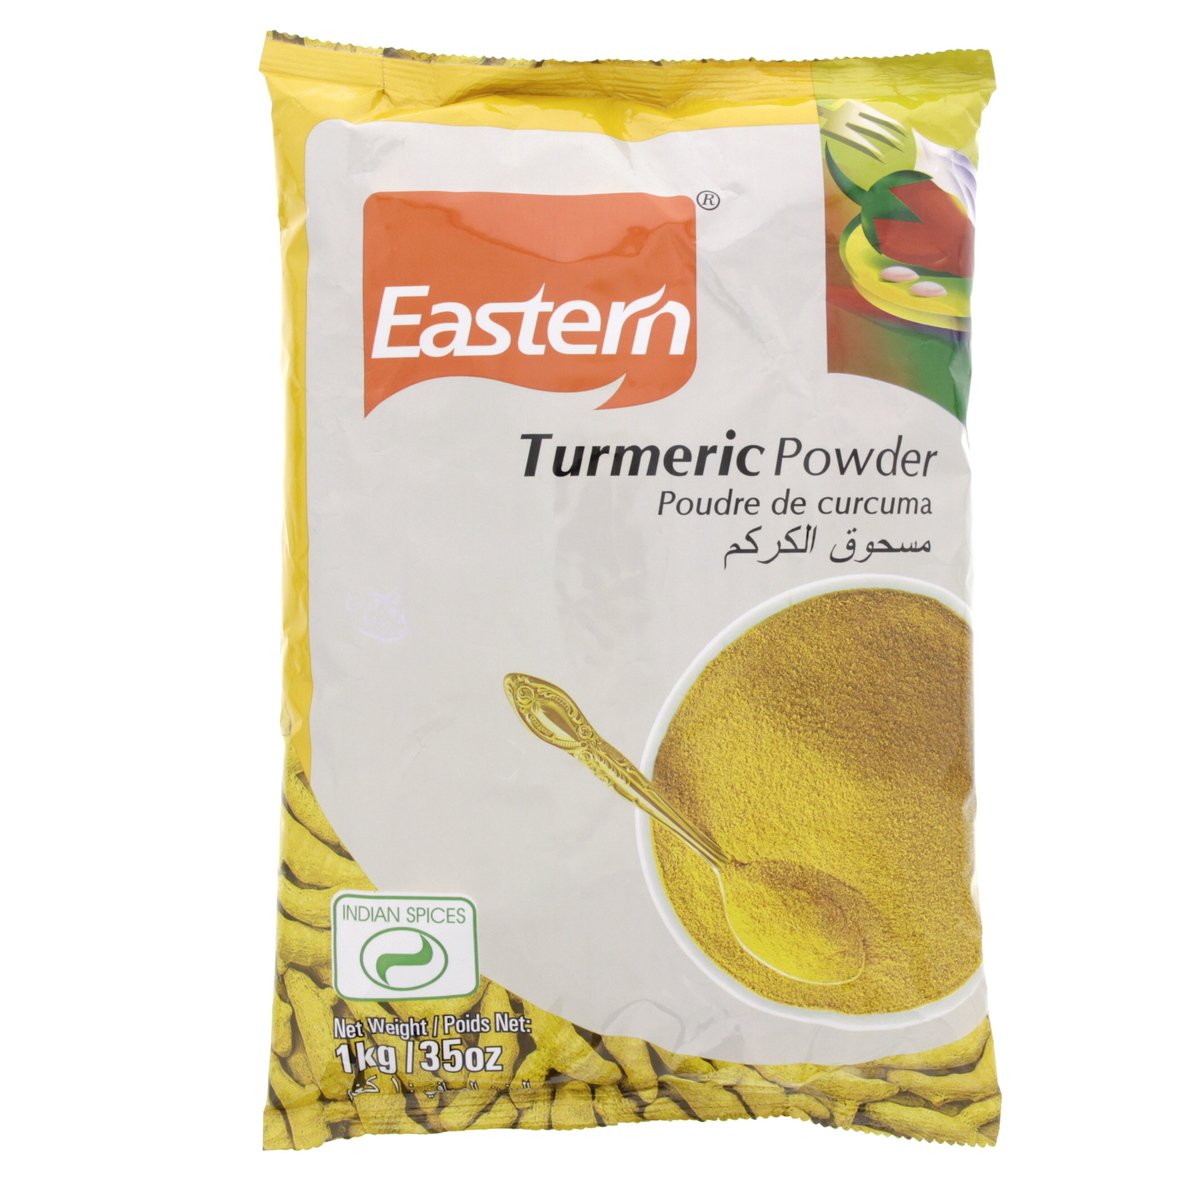 Eastern Turmeric Powder 1 kg